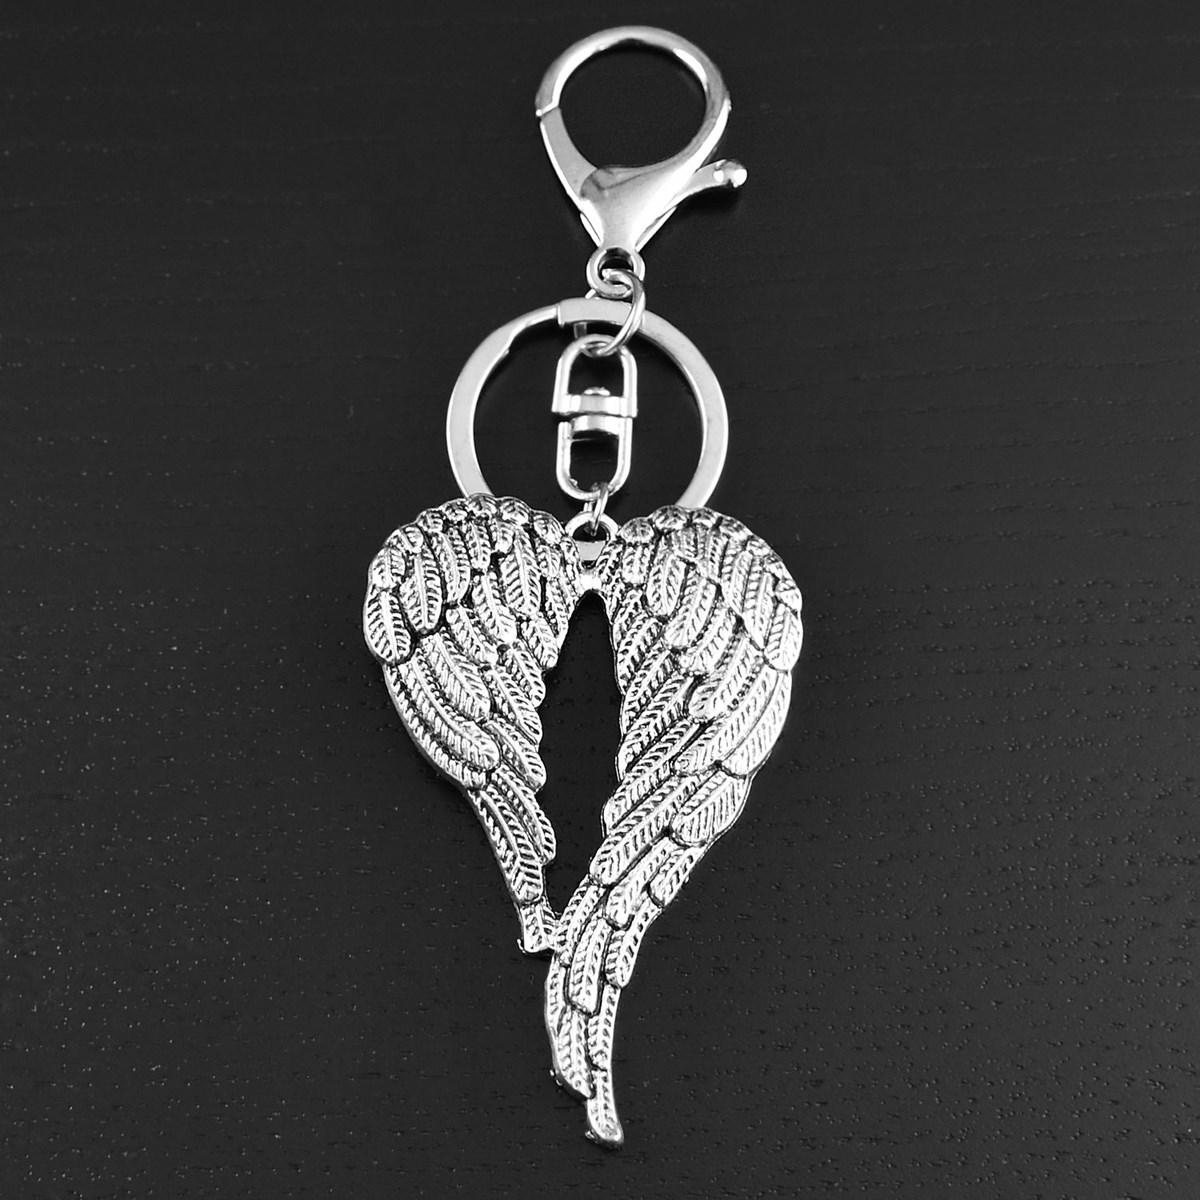 Porte-clés bijou de sac ailes d'ange argenté - vue 4